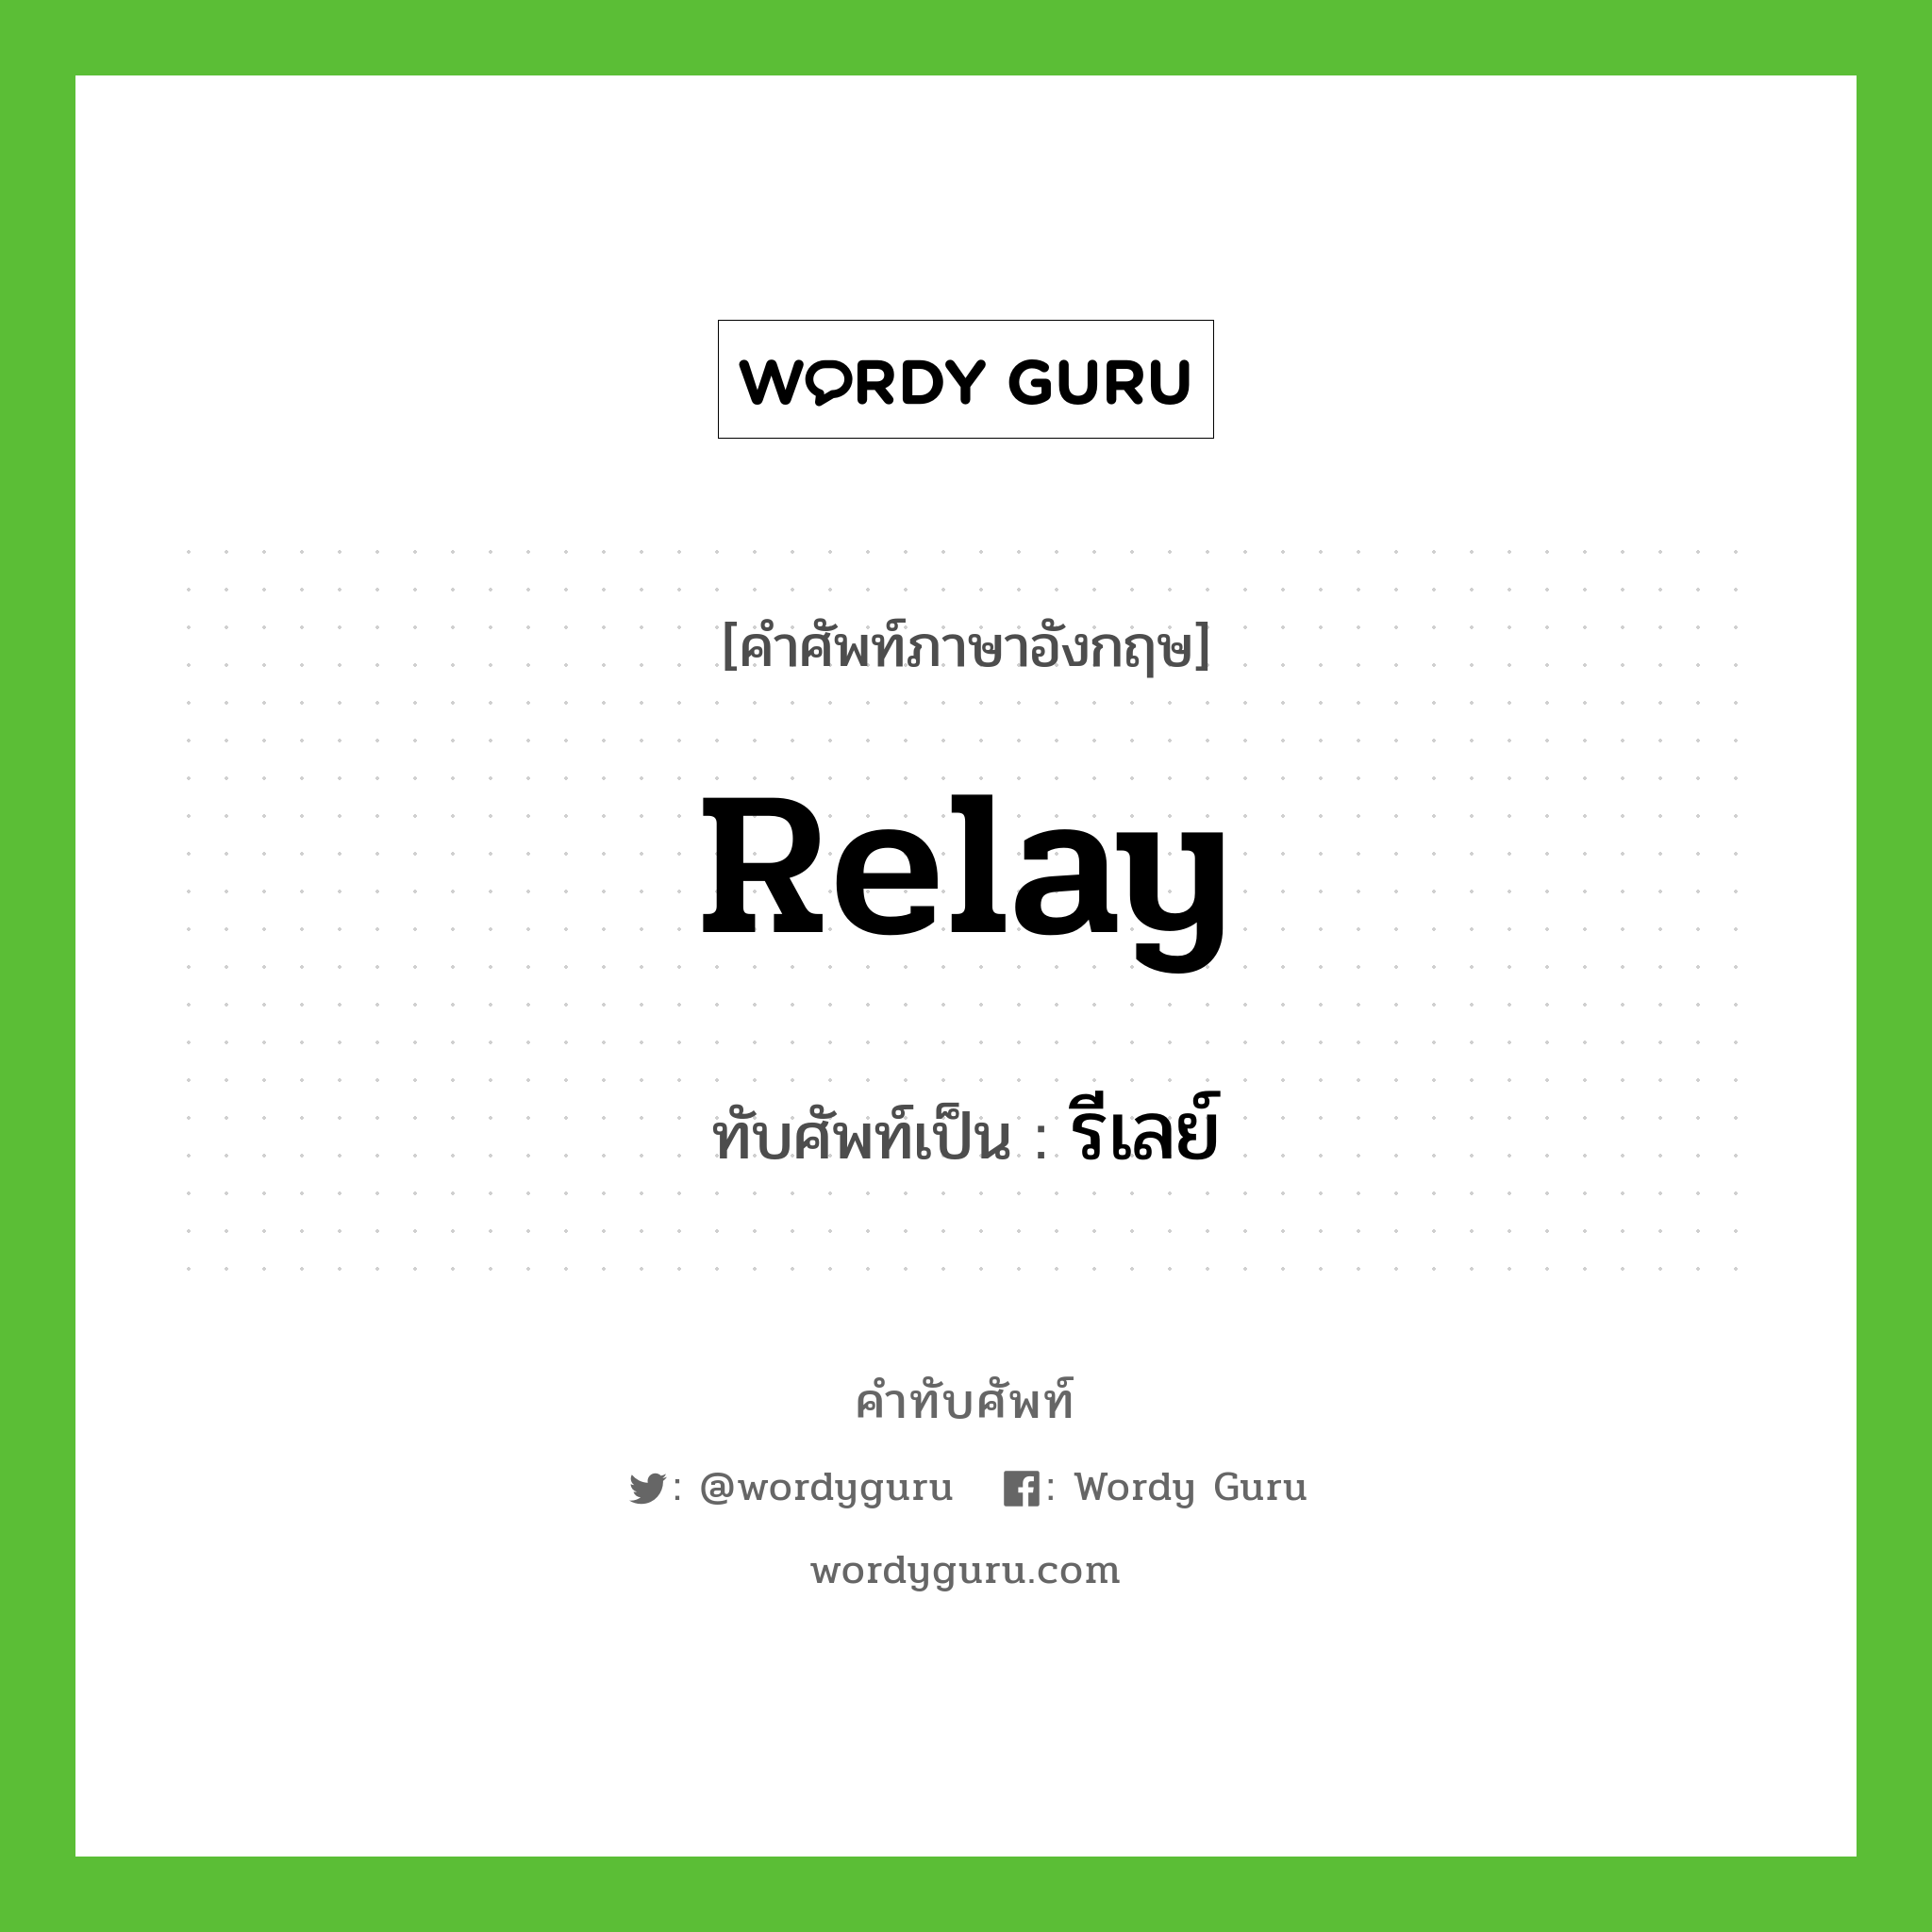 relay เขียนเป็นคำไทยว่าอะไร?, คำศัพท์ภาษาอังกฤษ relay ทับศัพท์เป็น รีเลย์